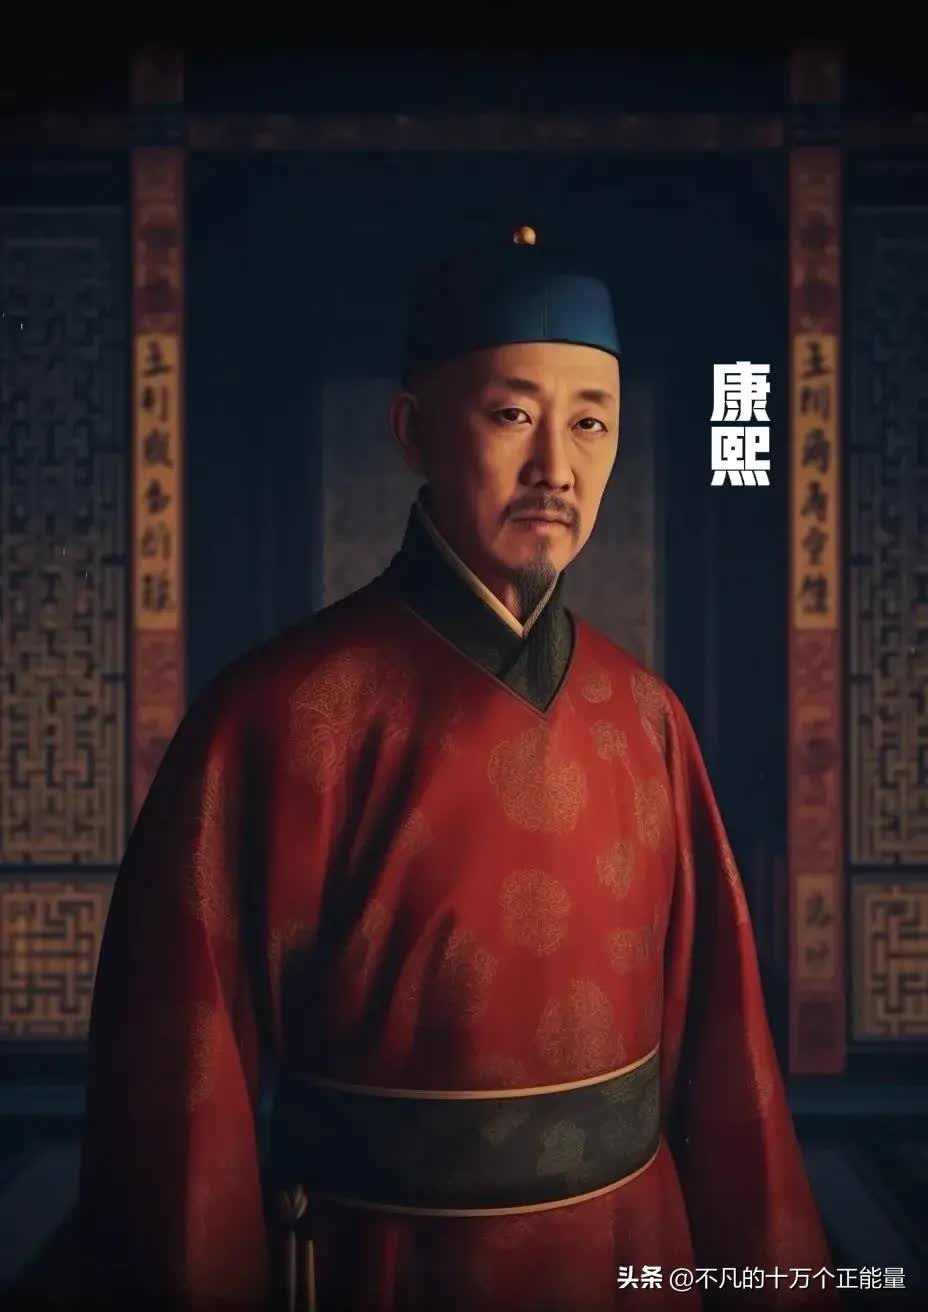 AI thêm màu vào chân dung 12 vị Hoàng đế nhà Thanh: Bất ngờ nhan sắc "đấng lang quân" của Từ Hi Thái hậu- Ảnh 8.